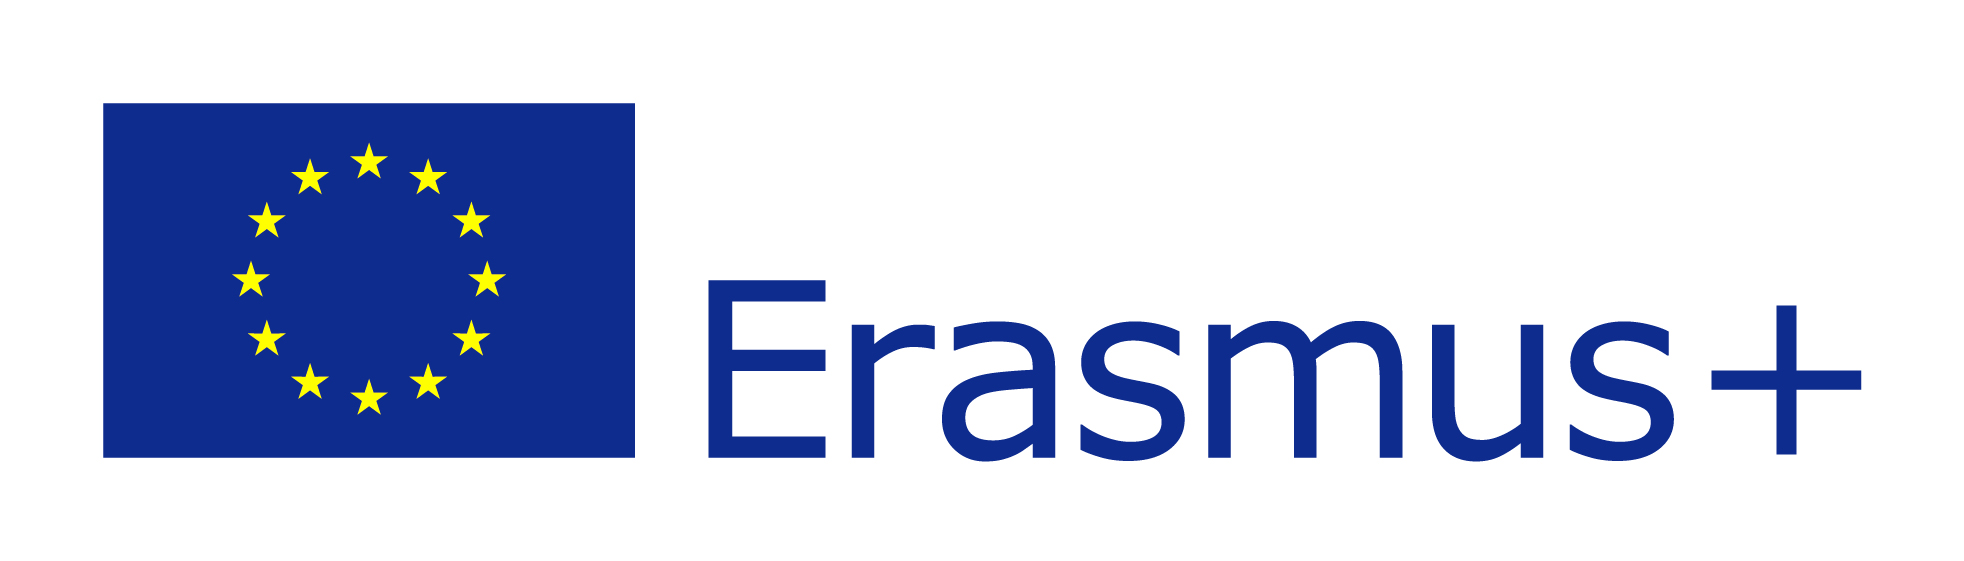 Erasmus Eu Flagge